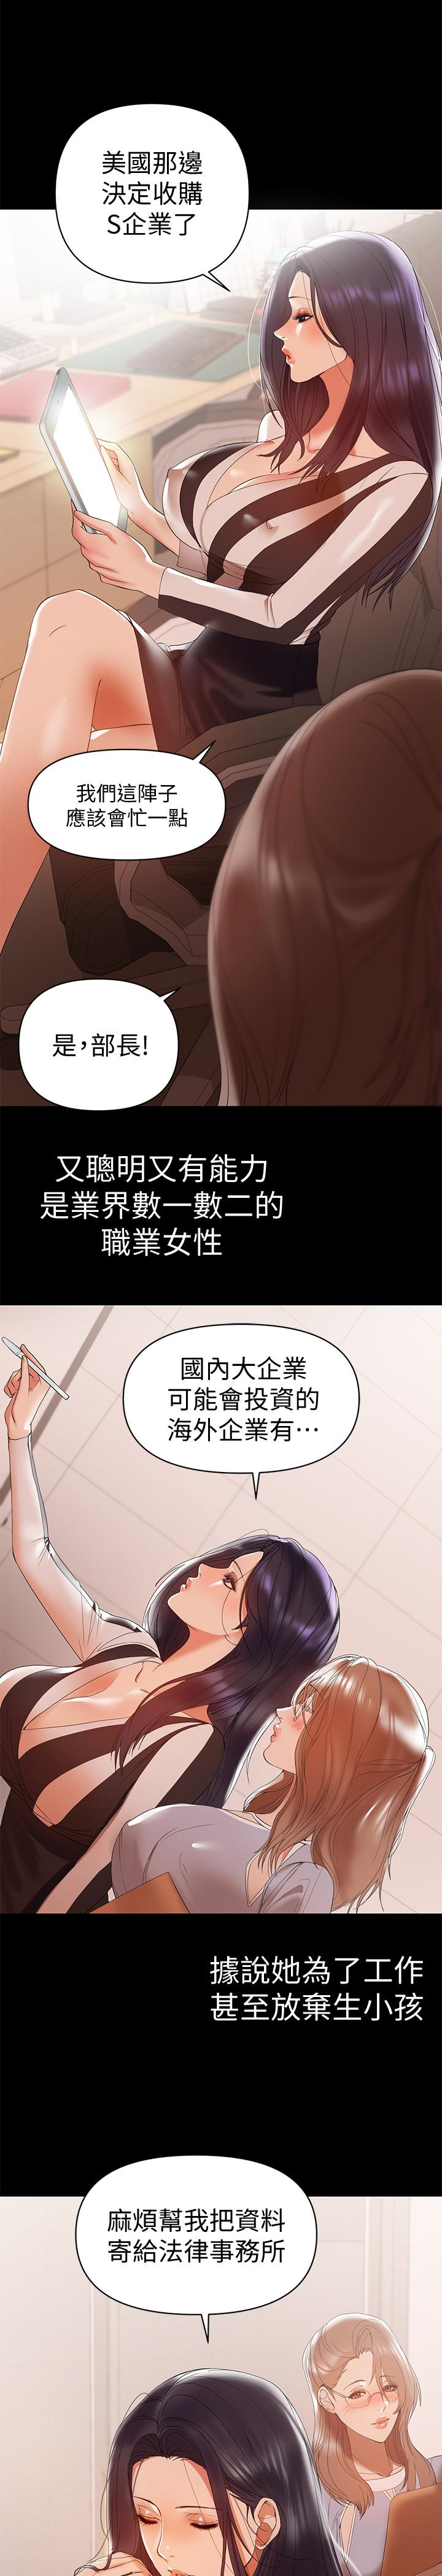 韩国污漫画 兼職奶媽 第11话-许部长…居然是个淫荡的人妻? 2